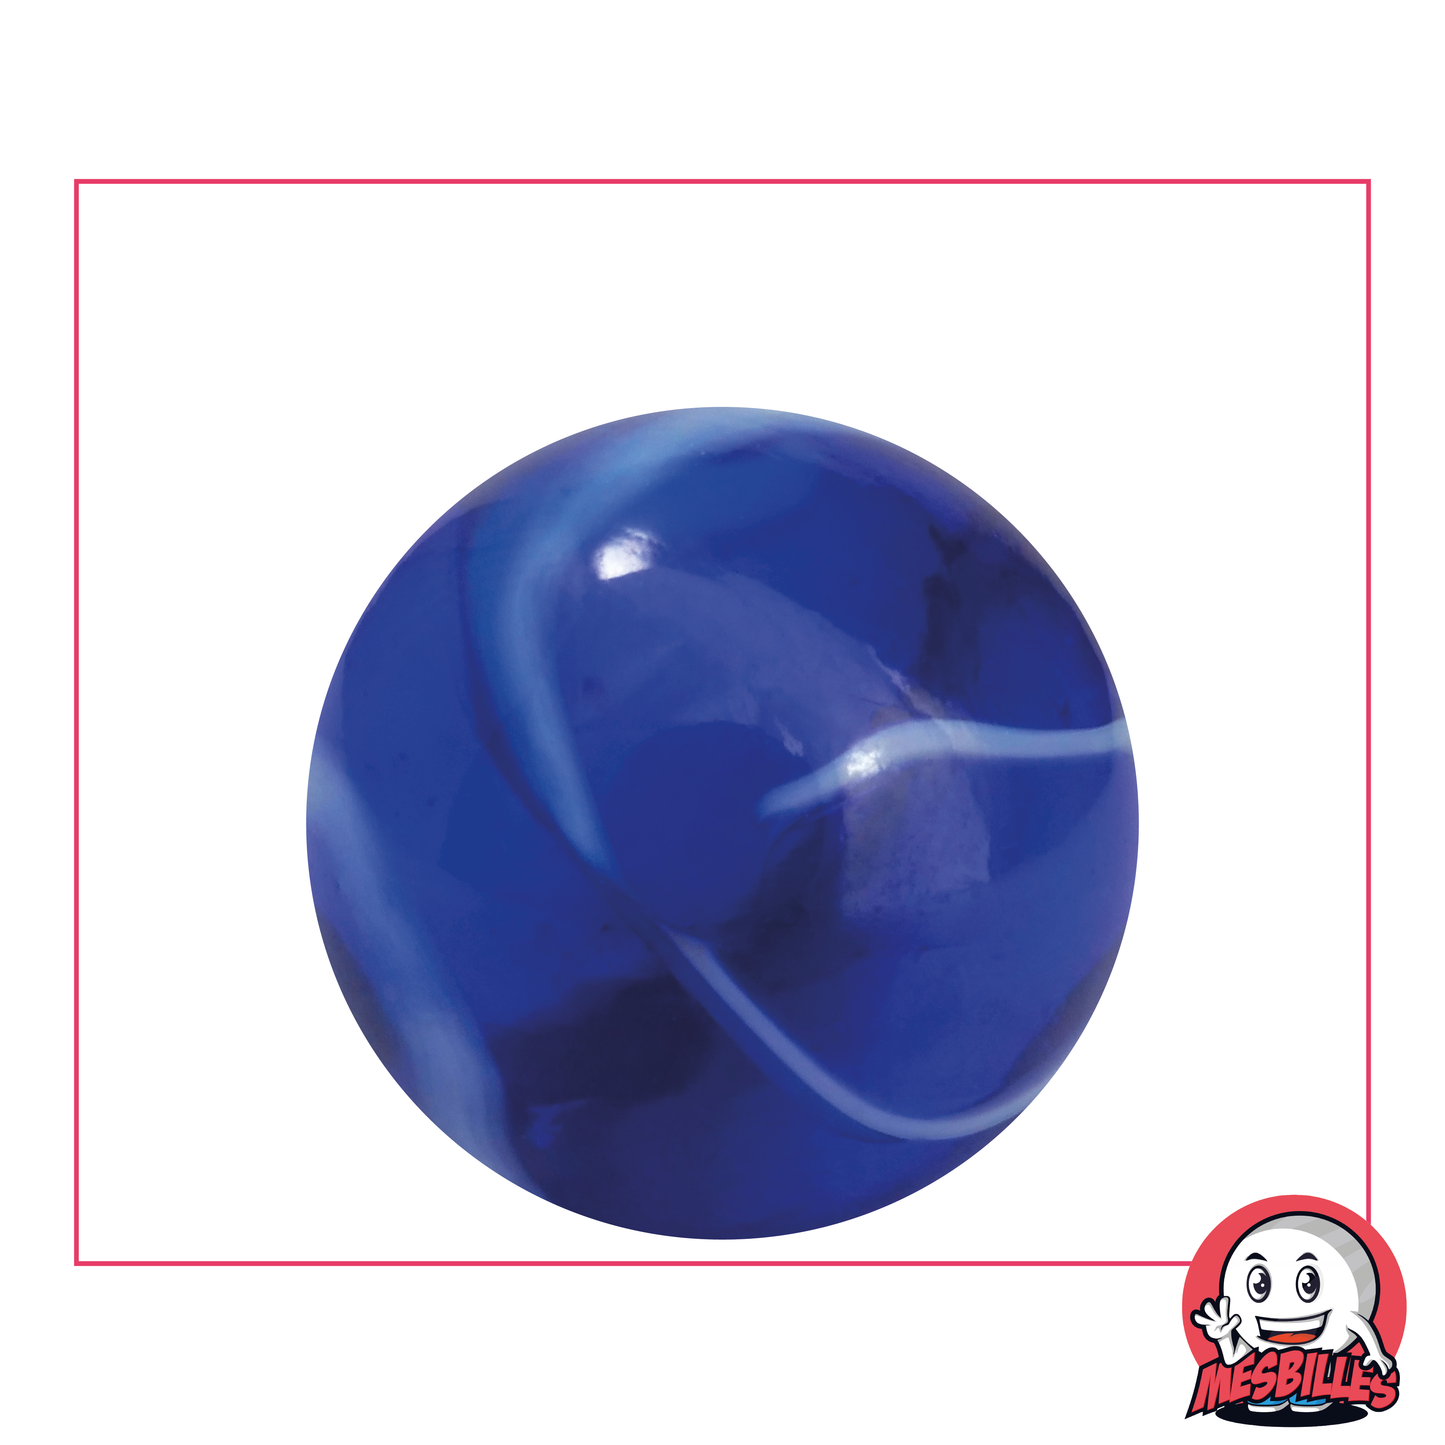 Bille Spot 35 mm - Verre Translucide Bleu strié de Blanc - MesBilles